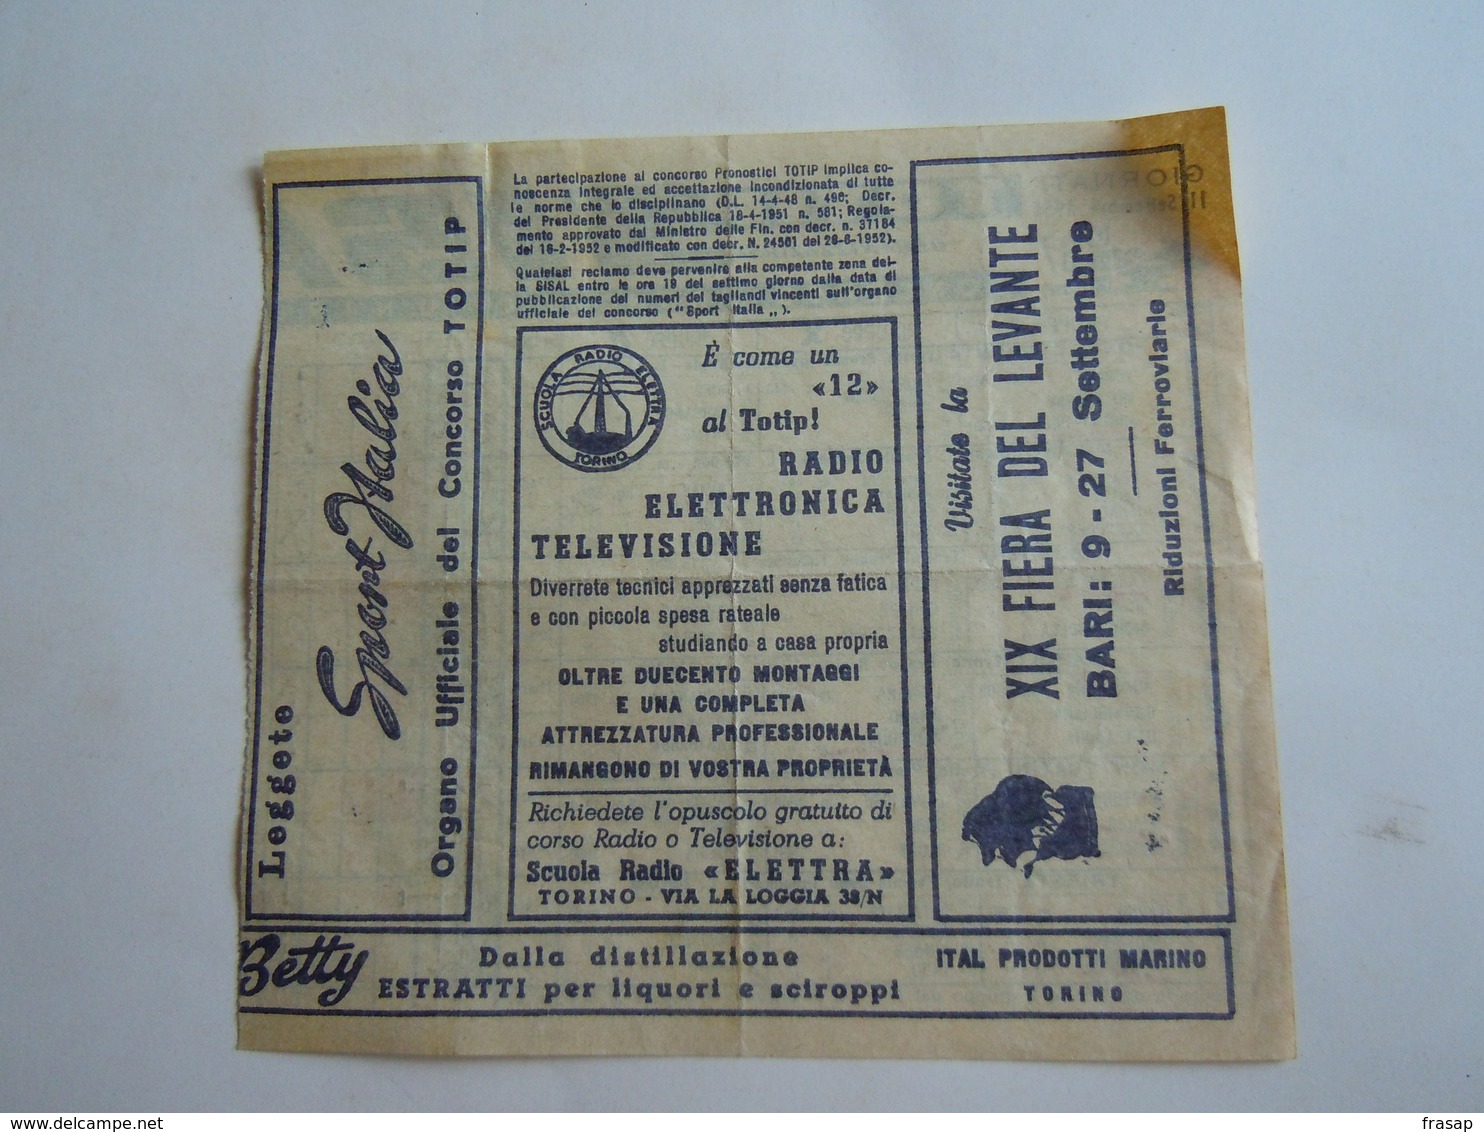 SCHEDINA GIOCATA TOTIP CORSE CAVALLI GIORNATA 374 1955 RADIO ELETRONICA TELEVISIONE - Equitazione